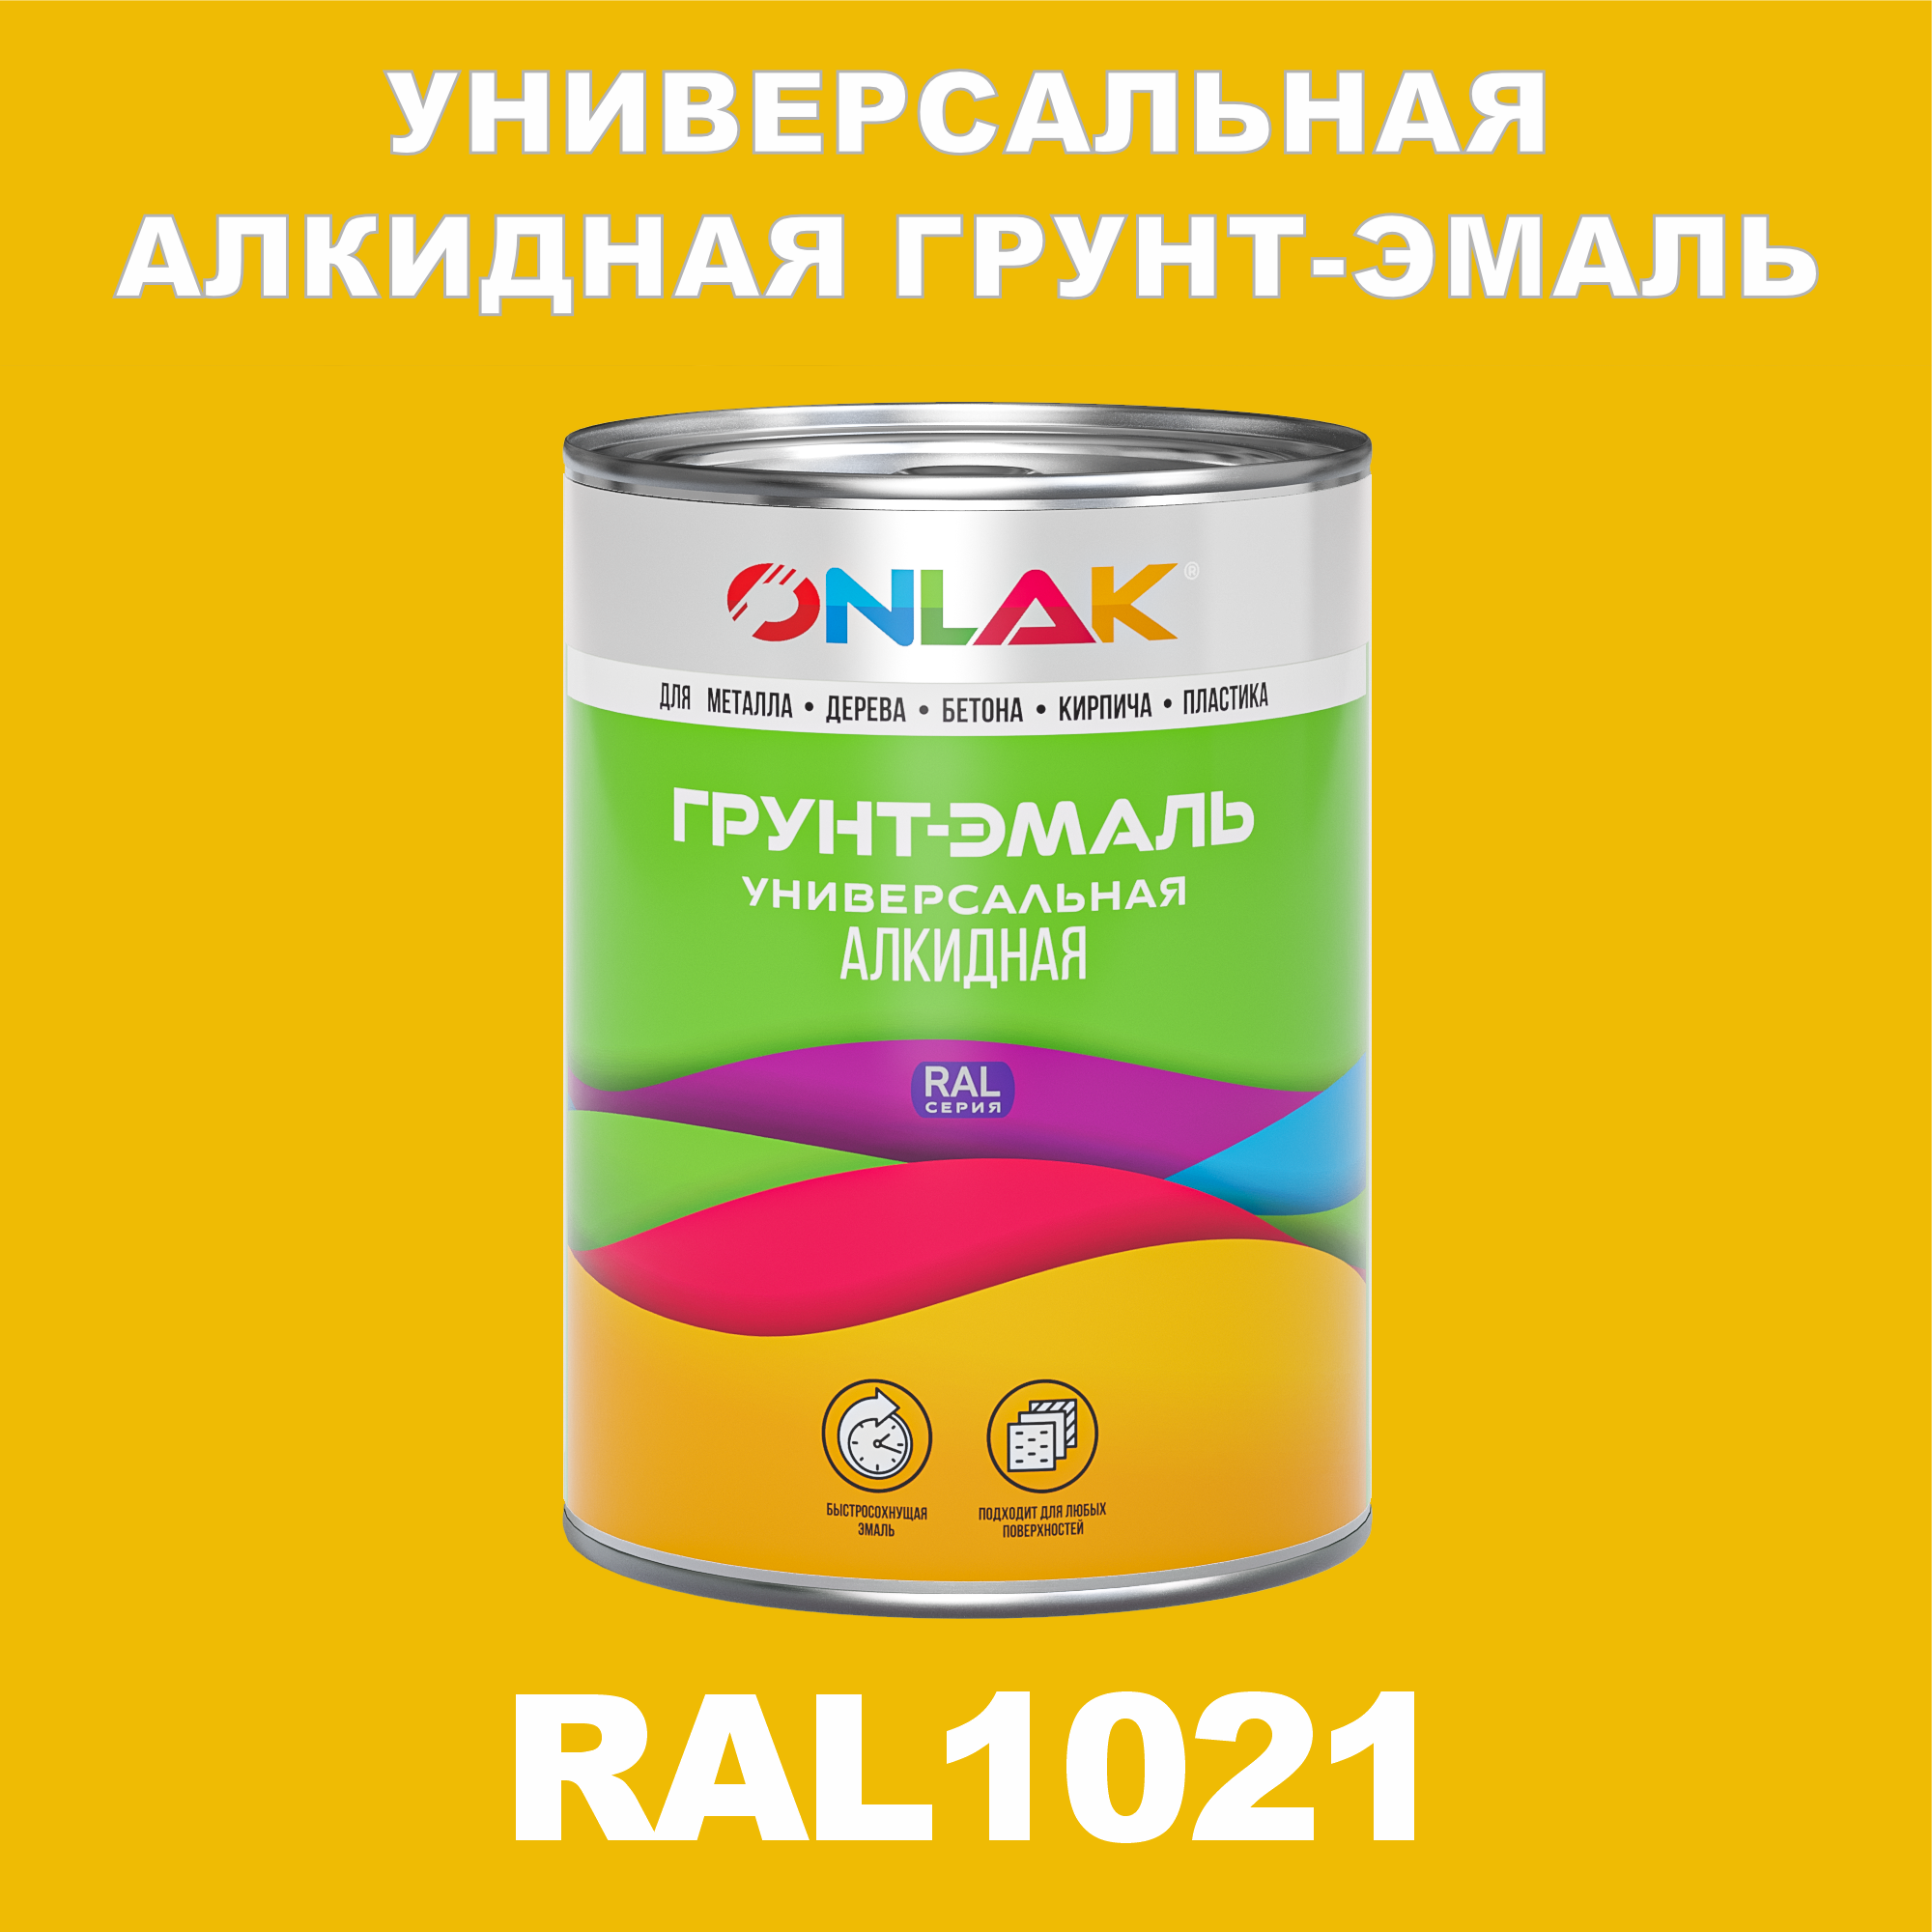 Грунт-эмаль ONLAK 1К RAL1021 антикоррозионная алкидная по металлу по ржавчине 1 кг грунт эмаль yollo по ржавчине алкидная белая 0 9 кг